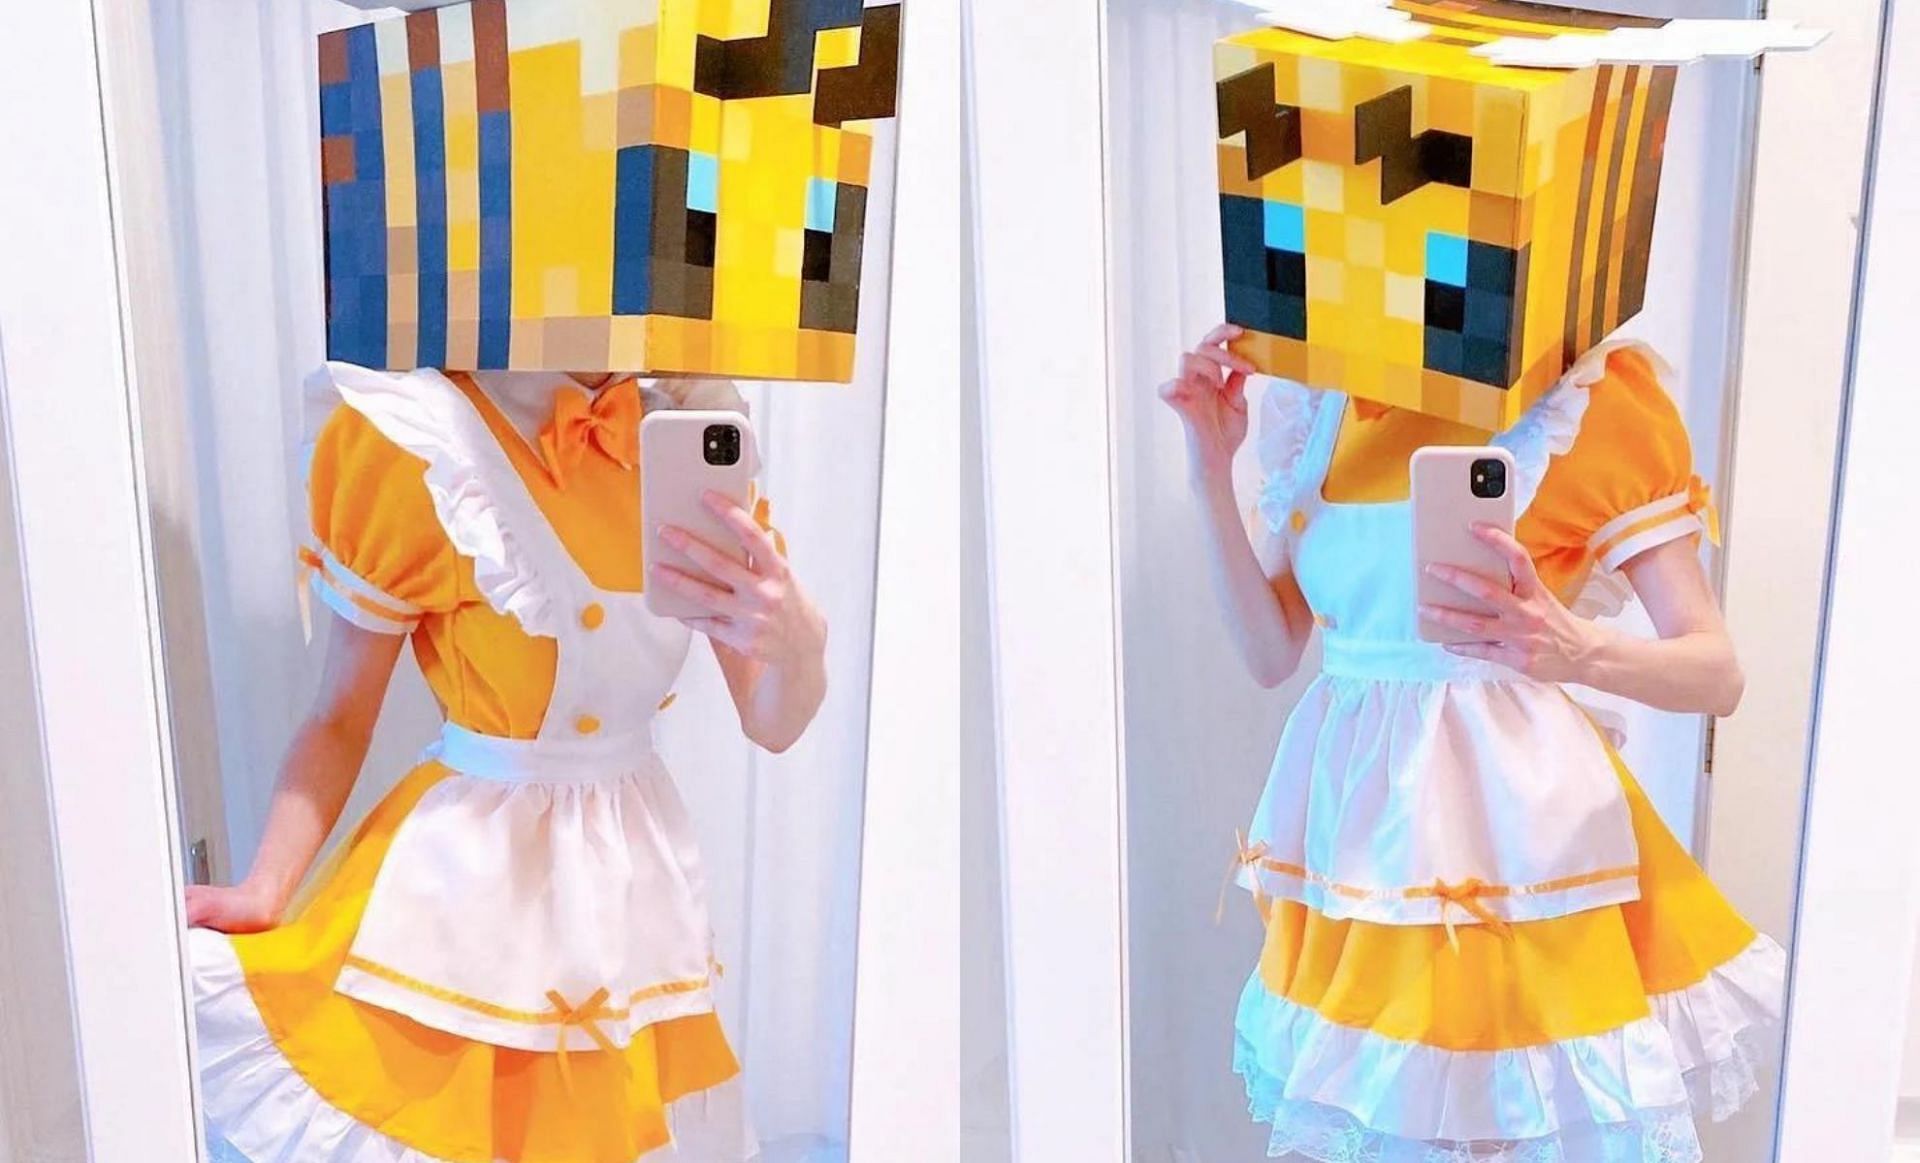 A stellar bee costume (Image via u/evvils on Reddit)